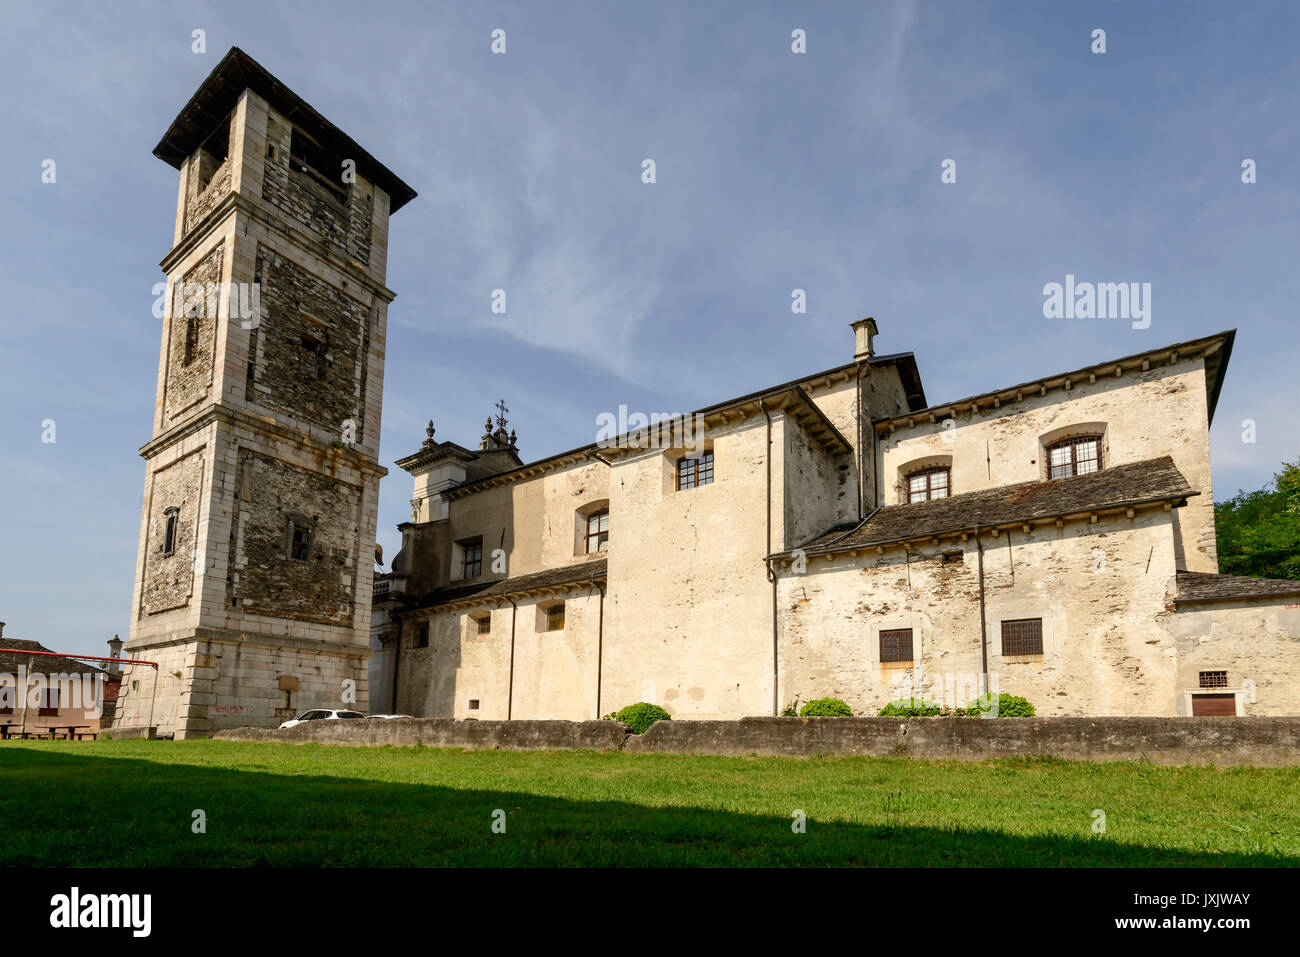 Vista lateral de la iglesia y el campanario de la aldea histórica, rodada en brillante día de verano en Miasino, Novara, Cusio, Italia Foto de stock